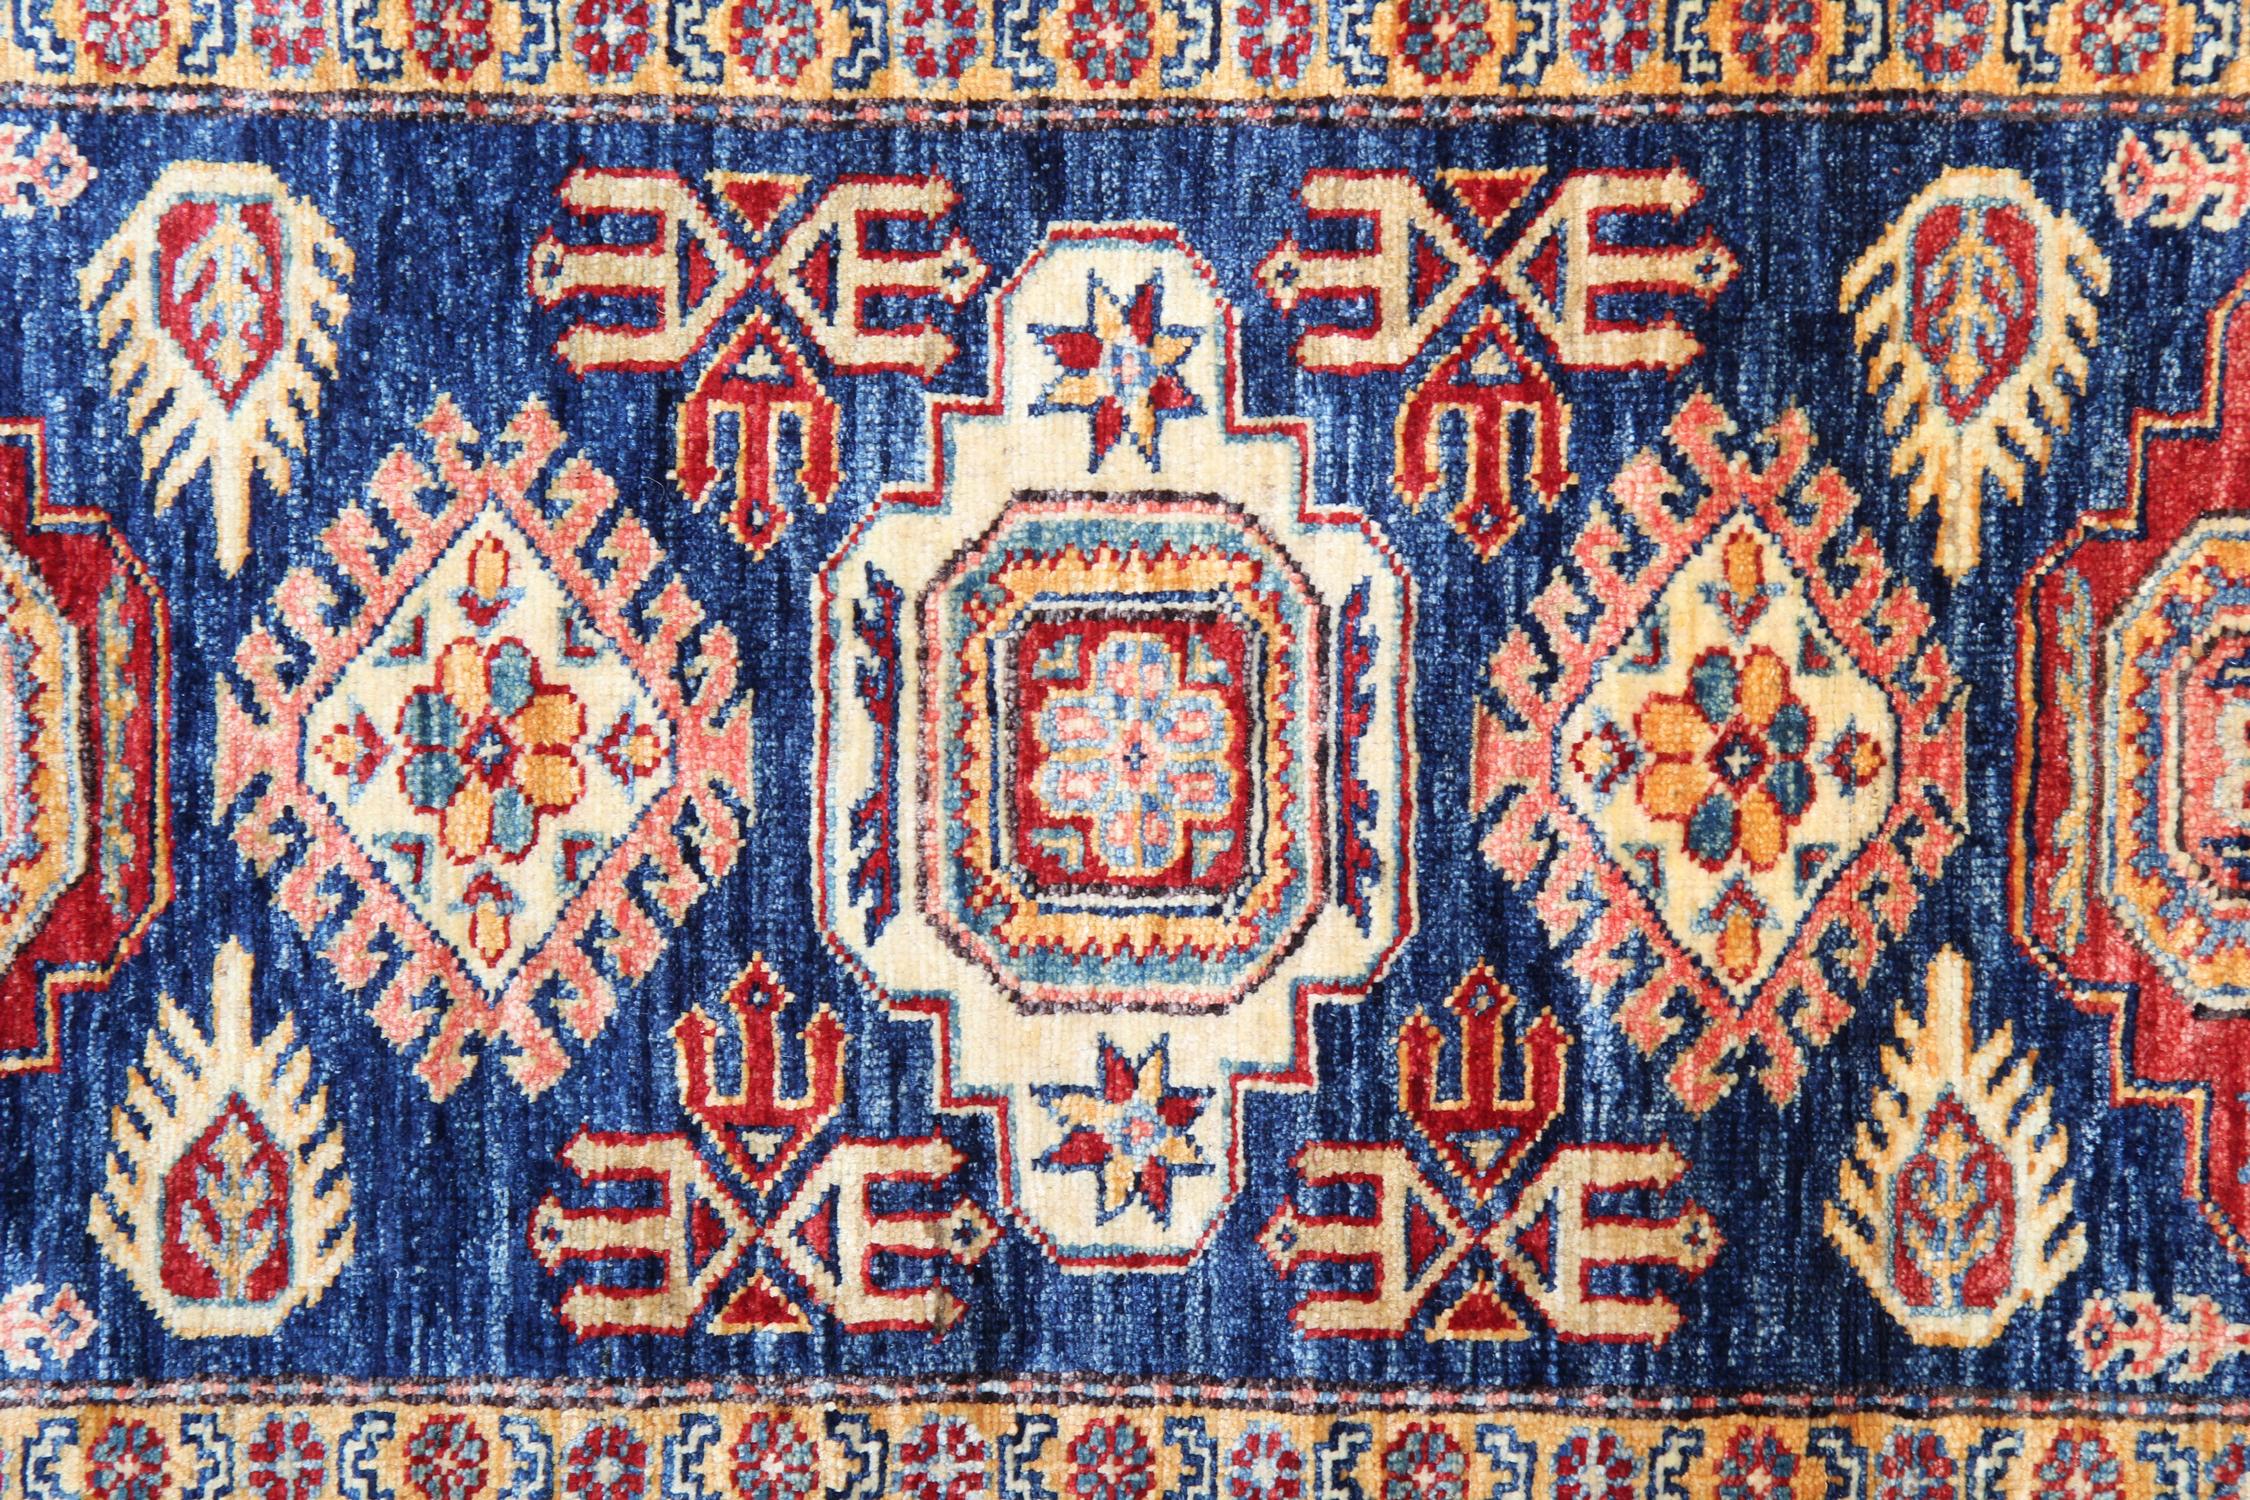 Woven Handmade Runner Rug Traditional Kazak Carpet Rug Blue Geometric Runner For Sale